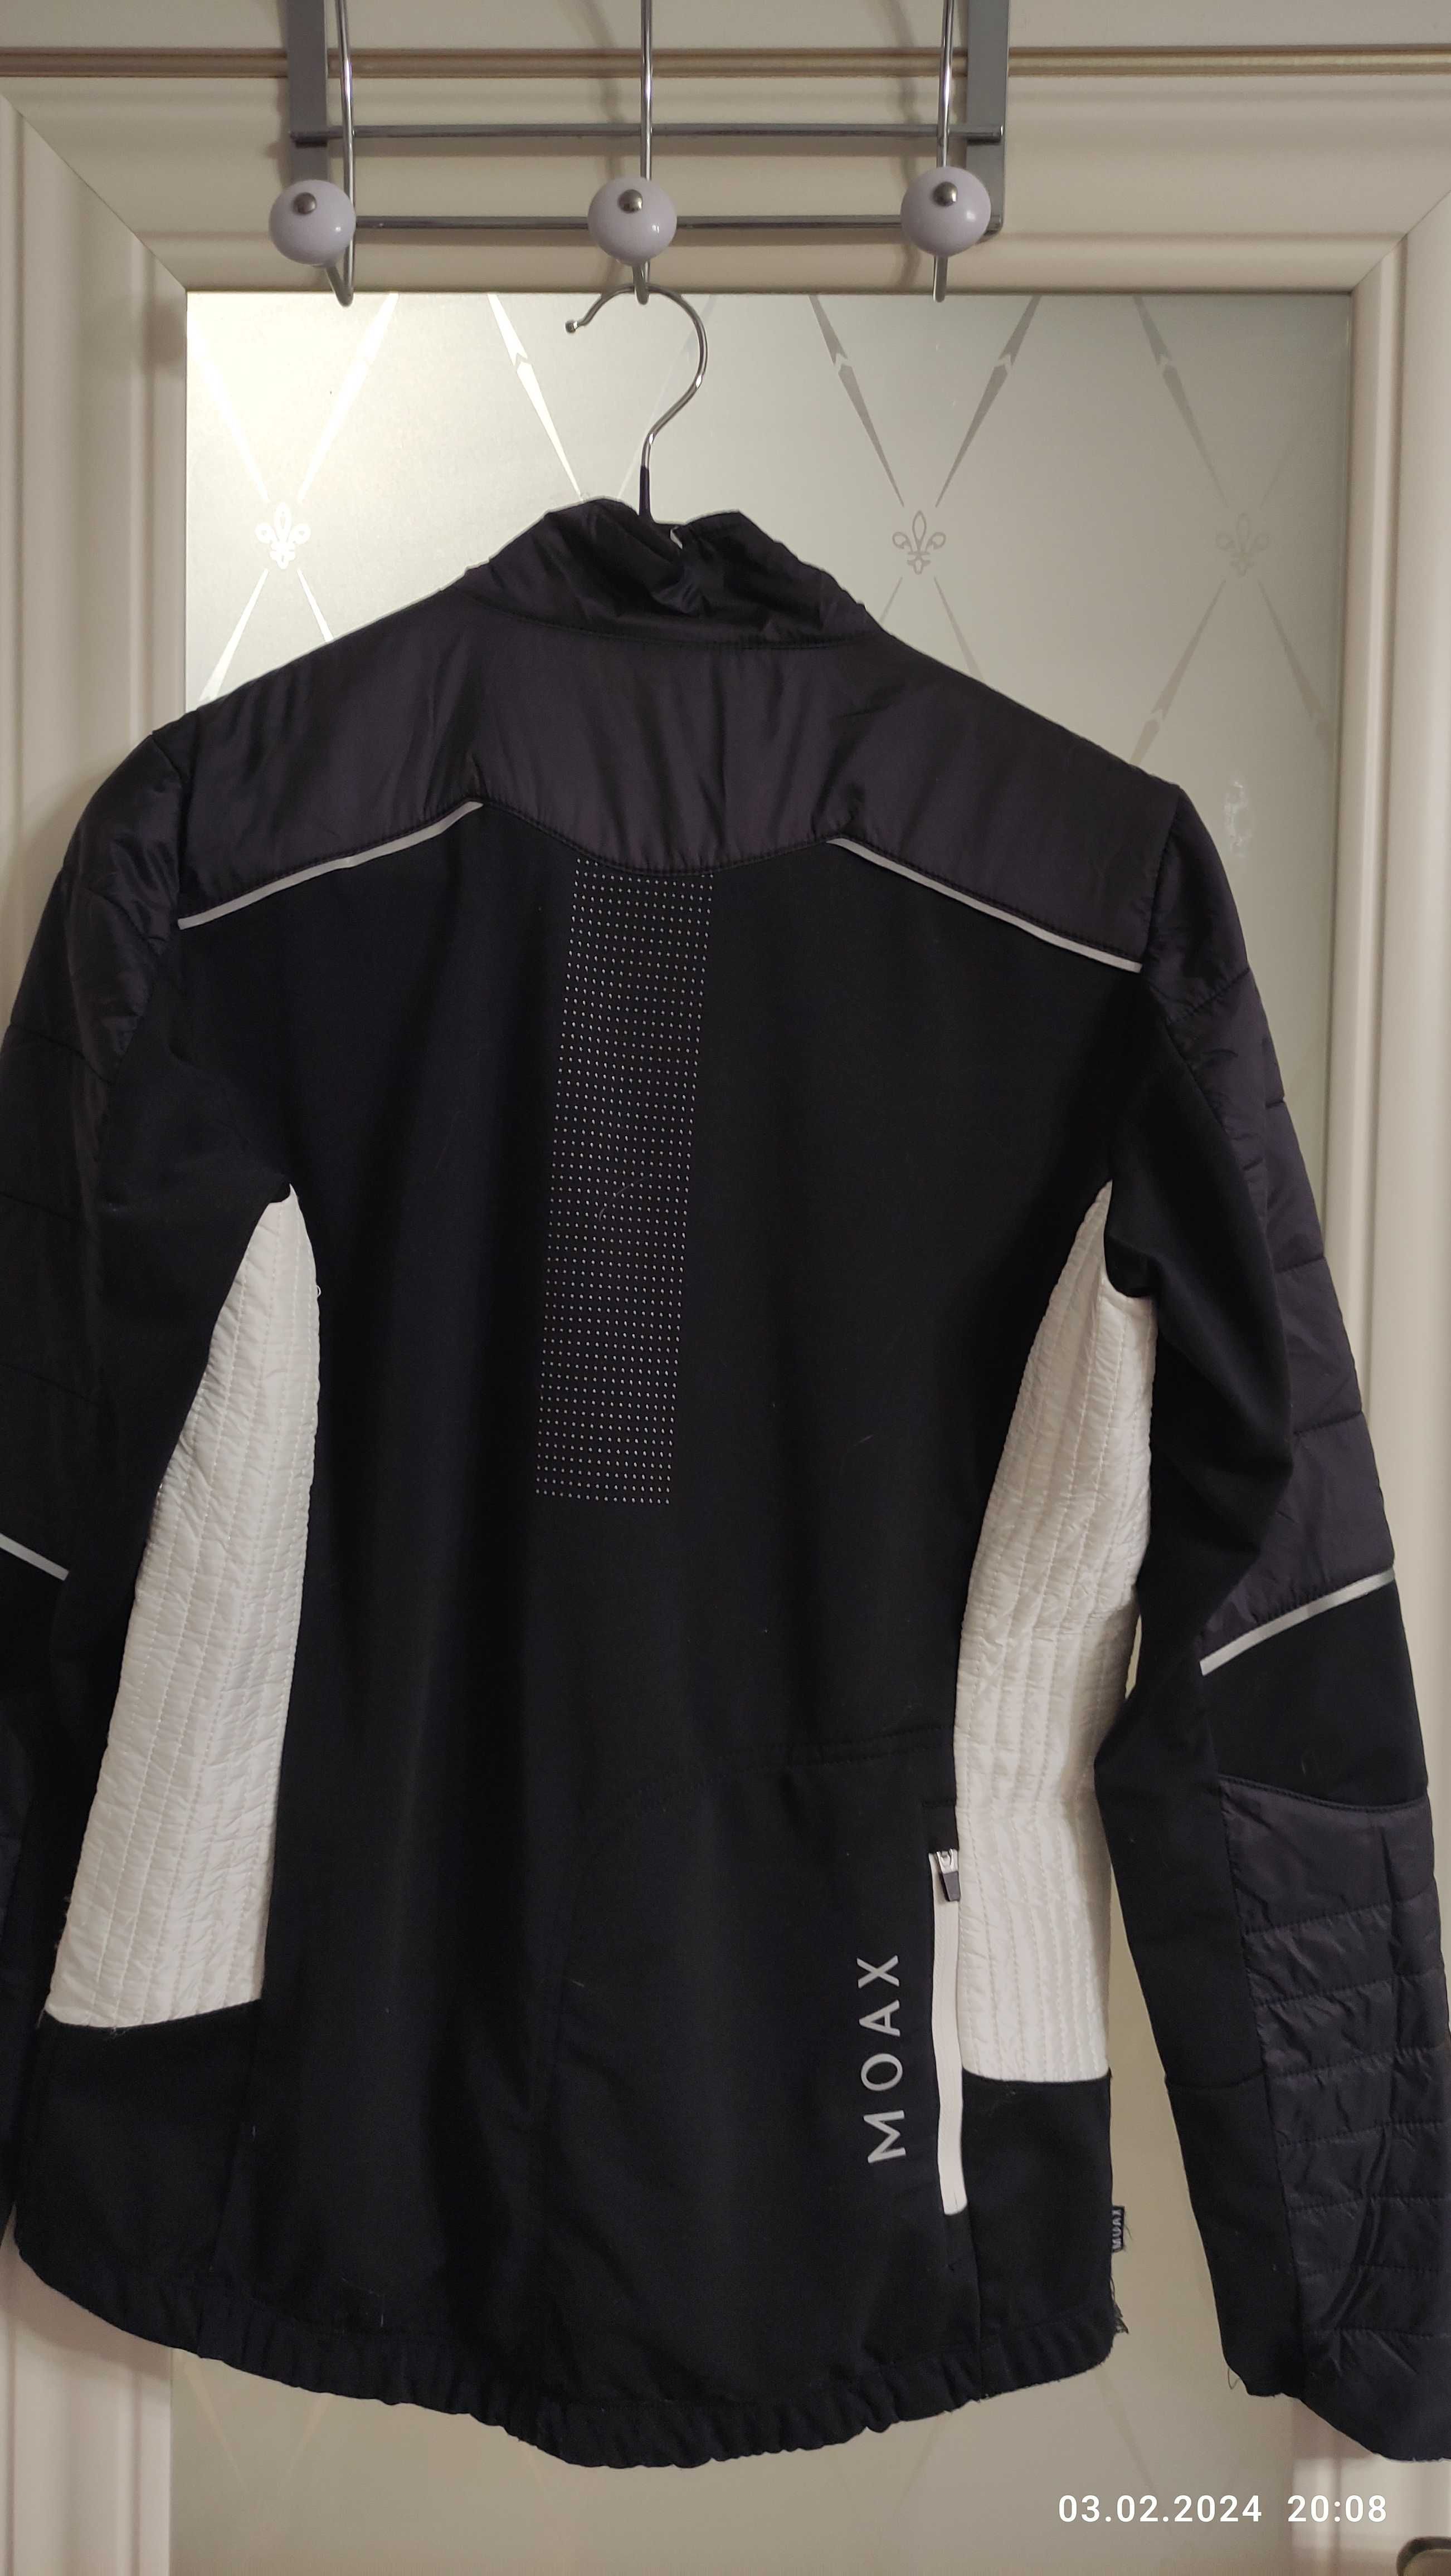 Разминочная куртка для спорта размер S, 44-46